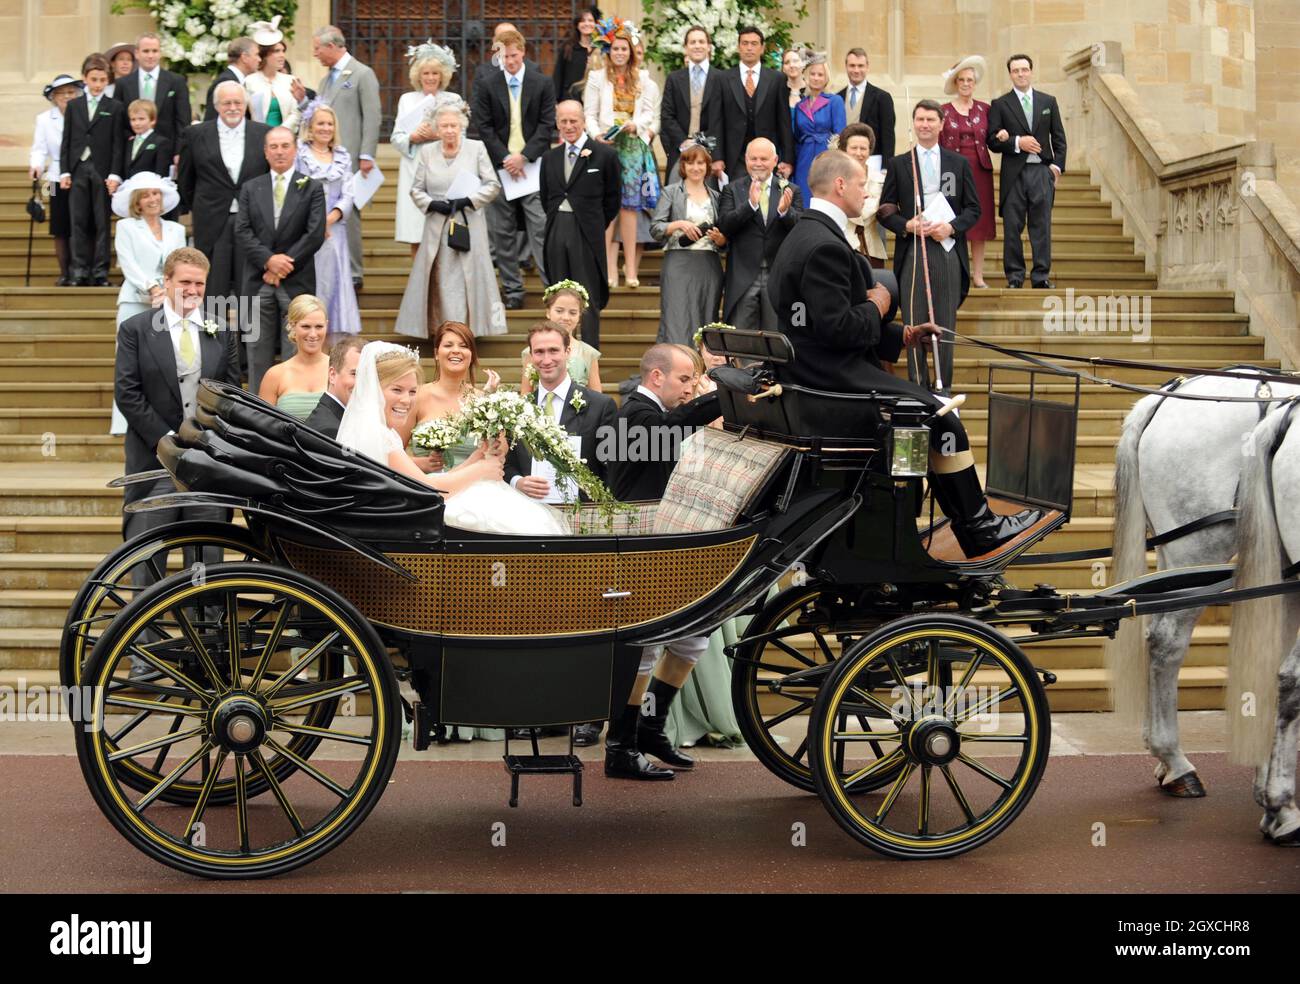 Peter Phillips und Autumn Kelly verlassen die St. George's Chapel nach ihrer Hochzeitszeremonie im Windor Castle, Windsor, in einer Pferdekutsche. Stockfoto